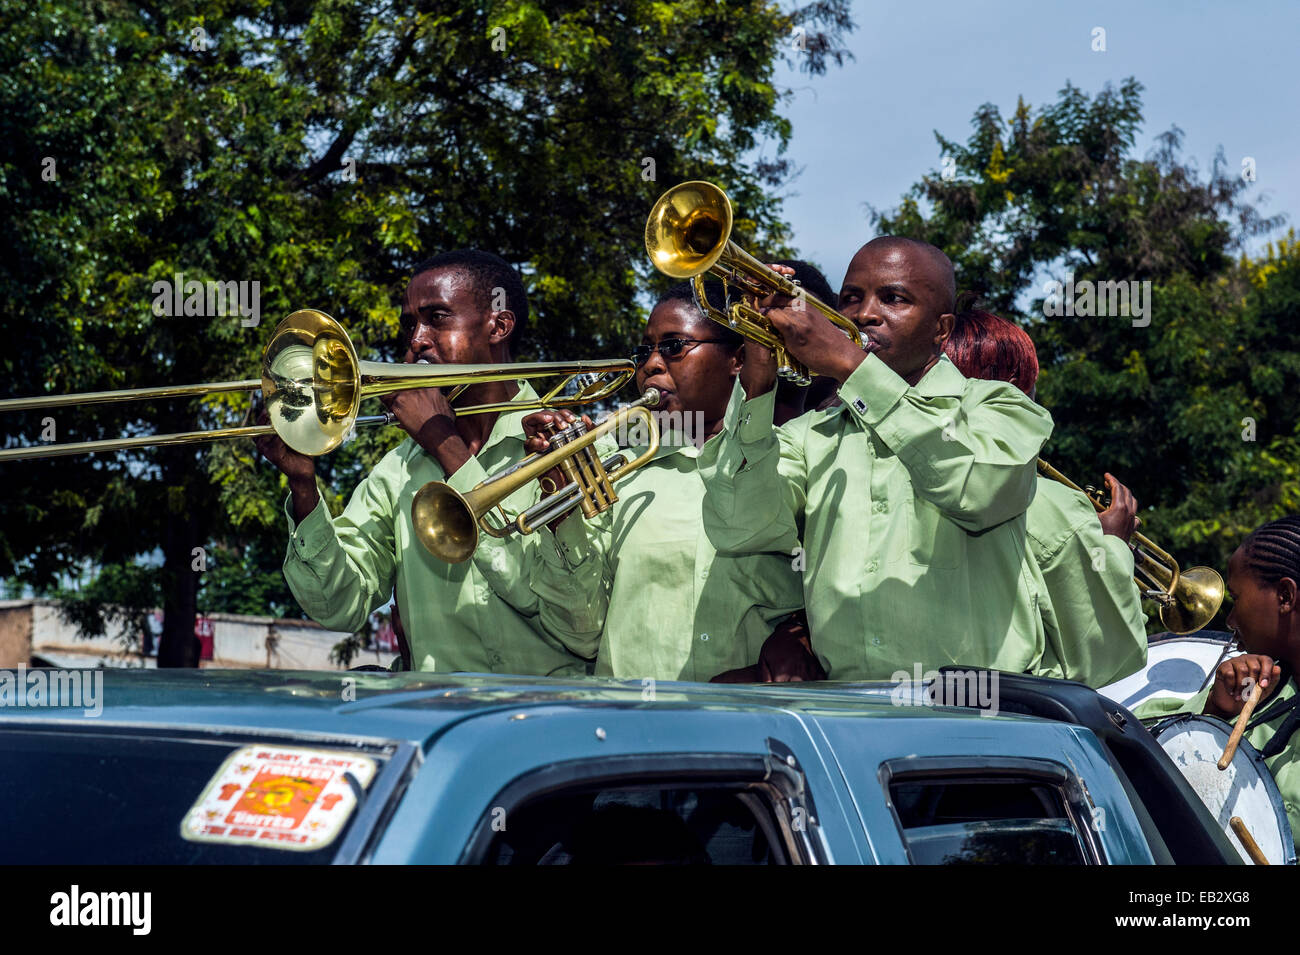 Un groupe joue de la musique pour une procession de mariage à partir d'un véhicule utilitaire dans la rue principale d'un village. Banque D'Images